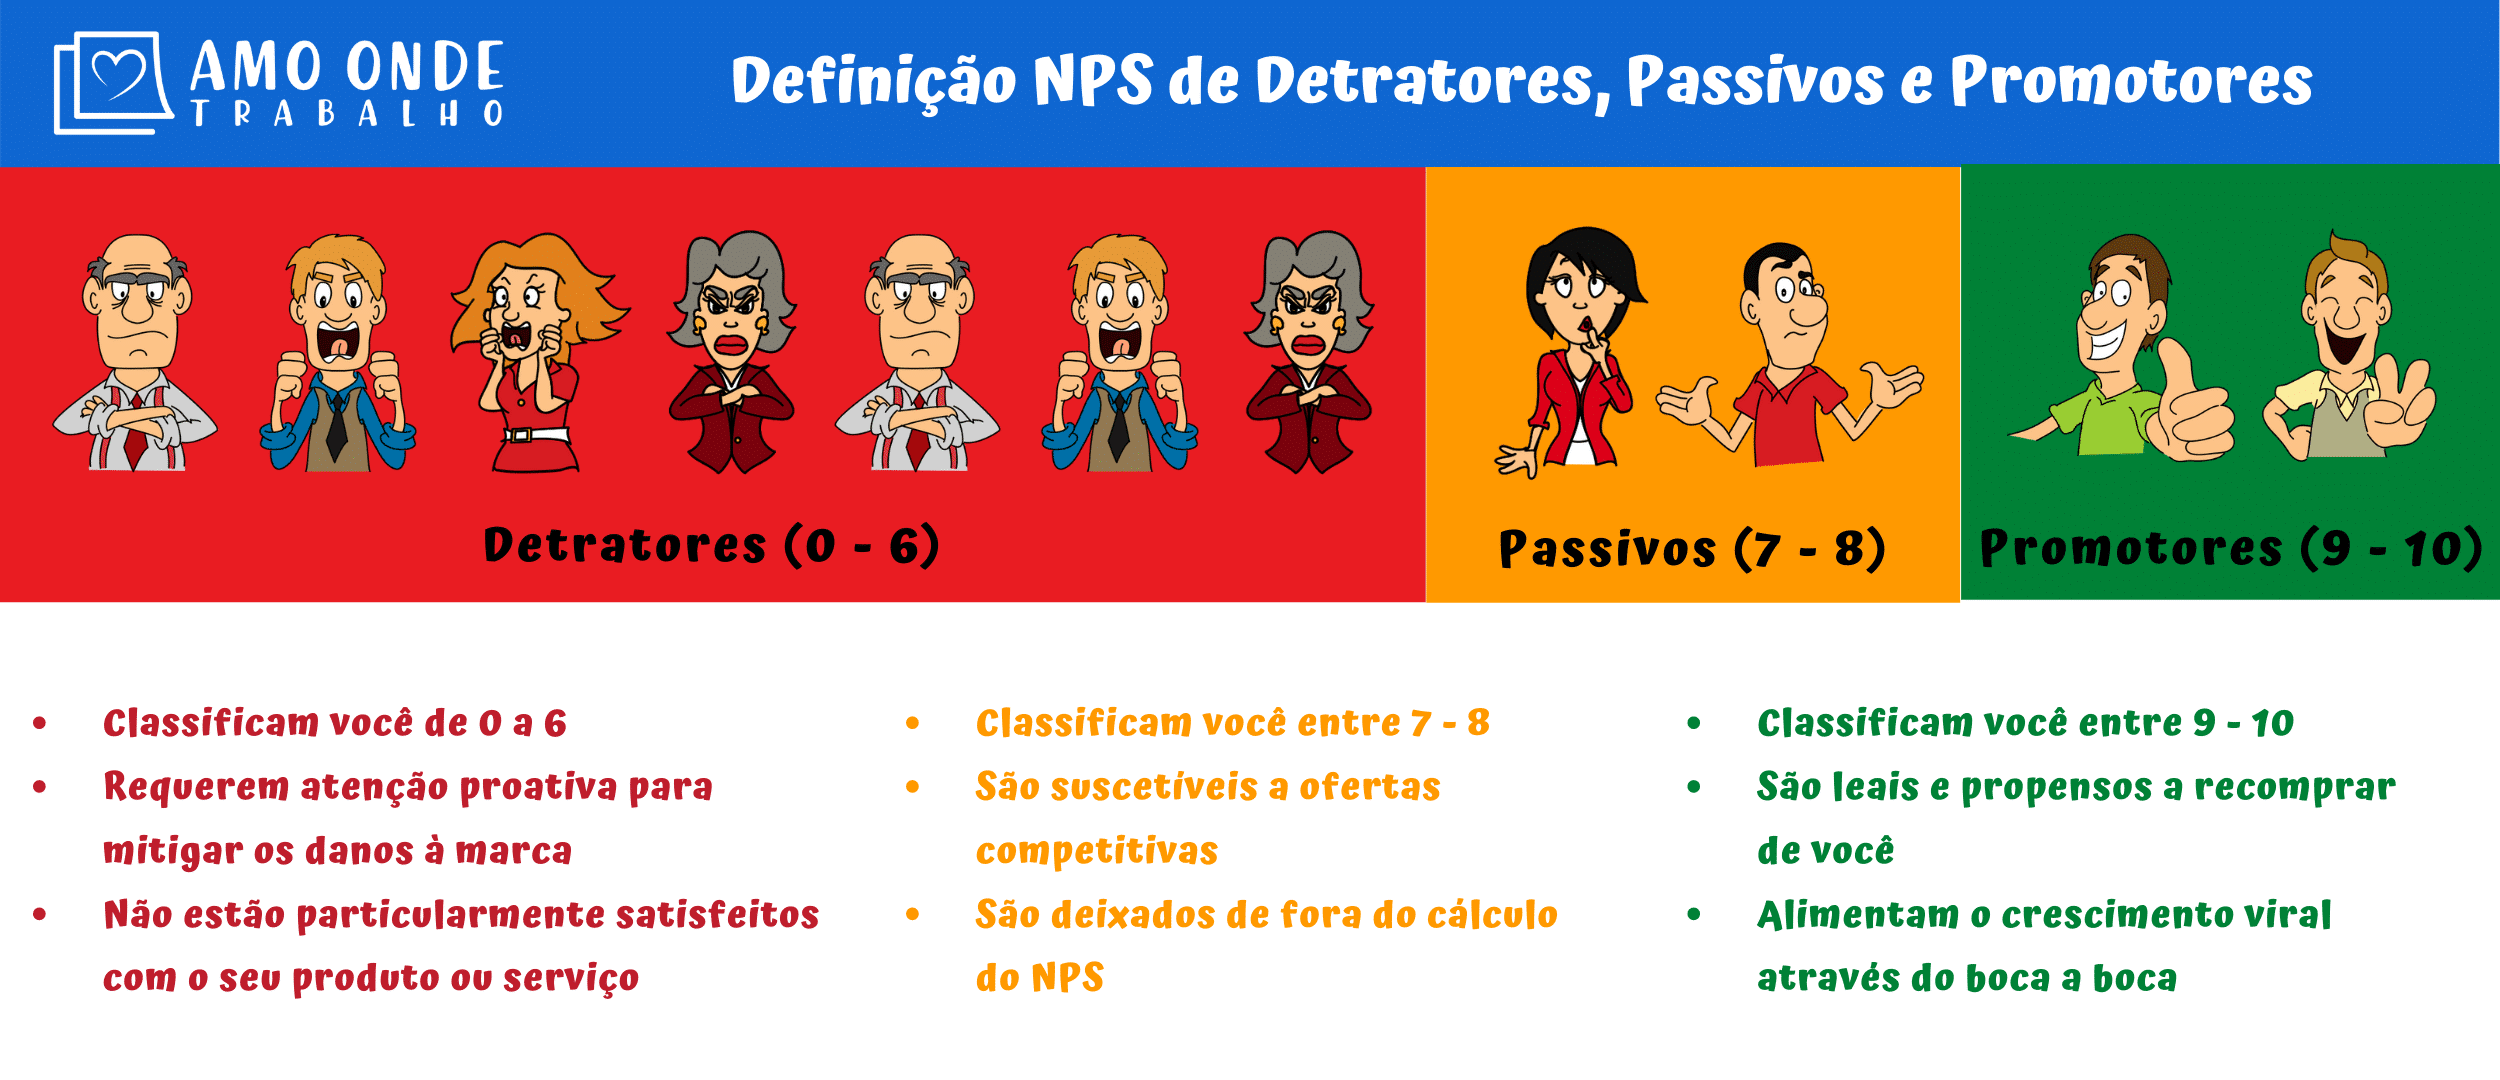 Definição NPS - Detratores, Passivos e Promotores